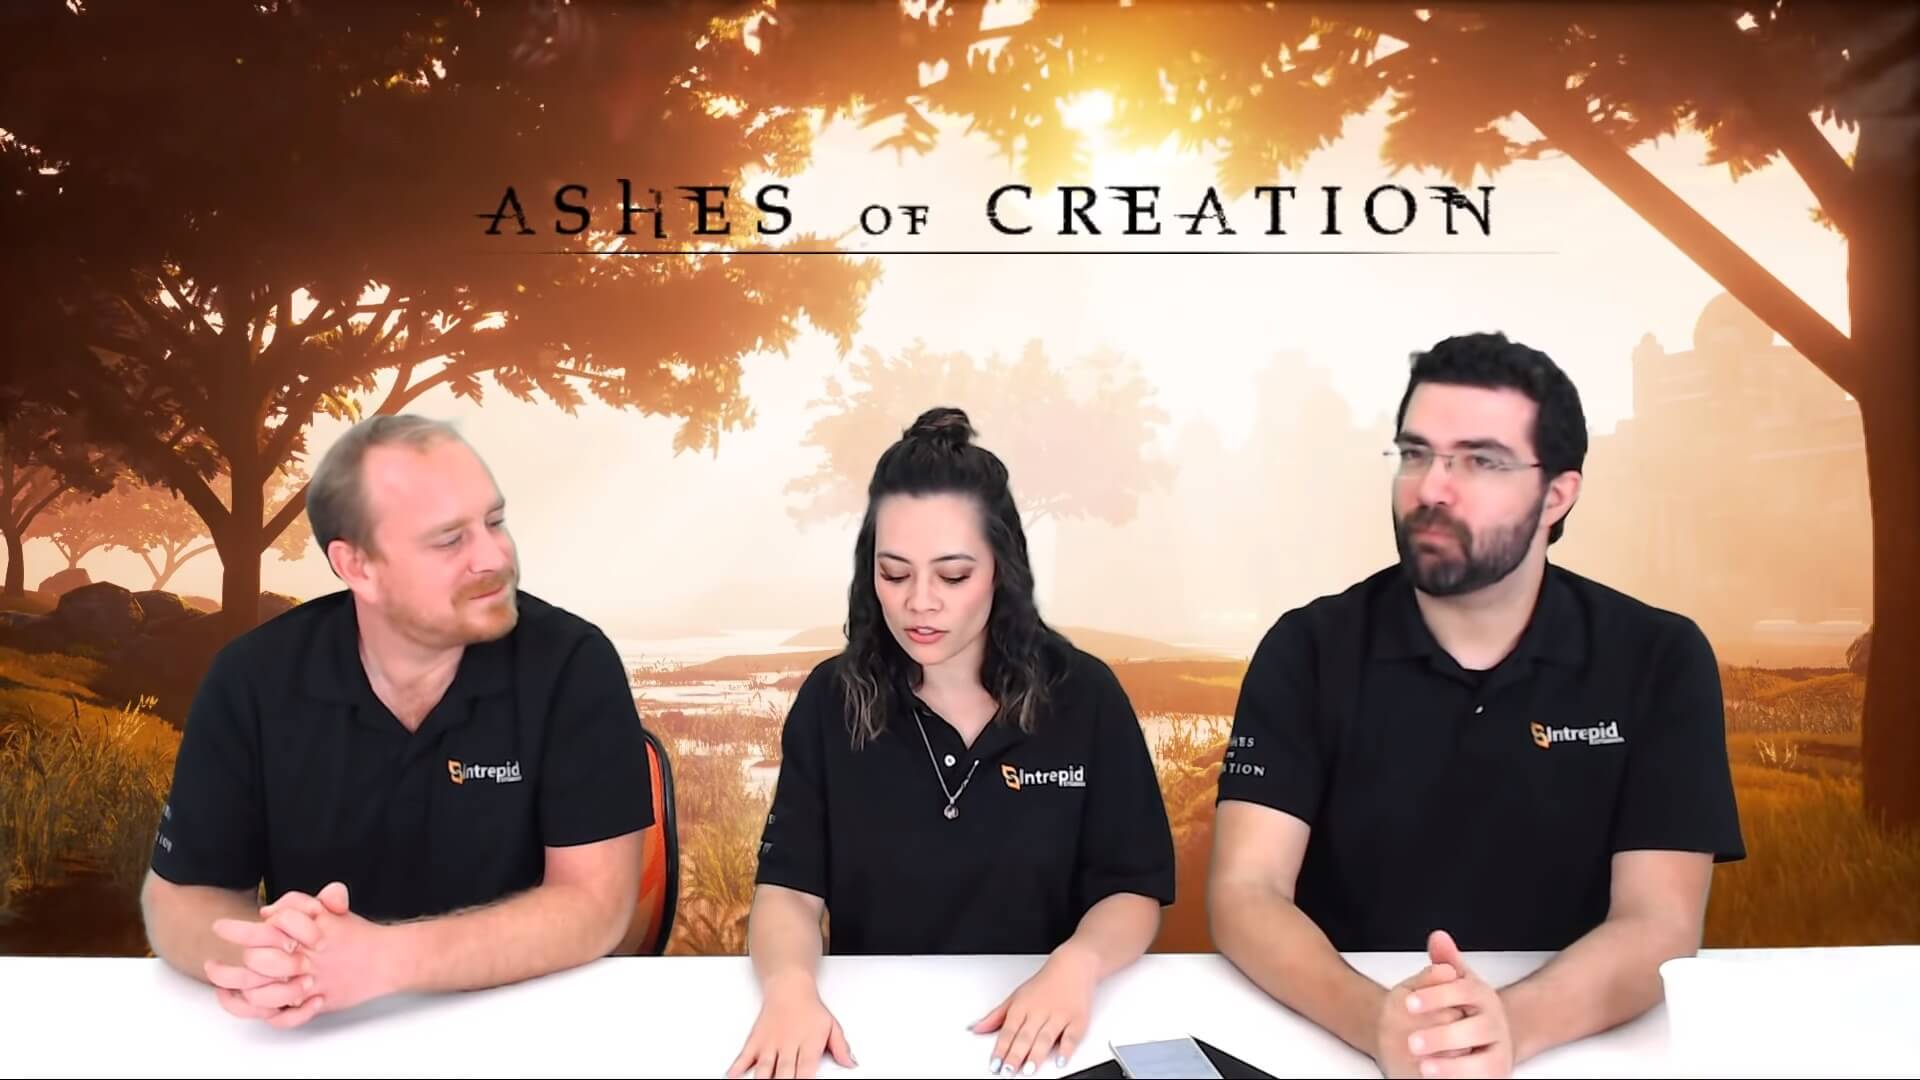 Перевод Q&A со стрима Ashes of Creation от 08.03.2019